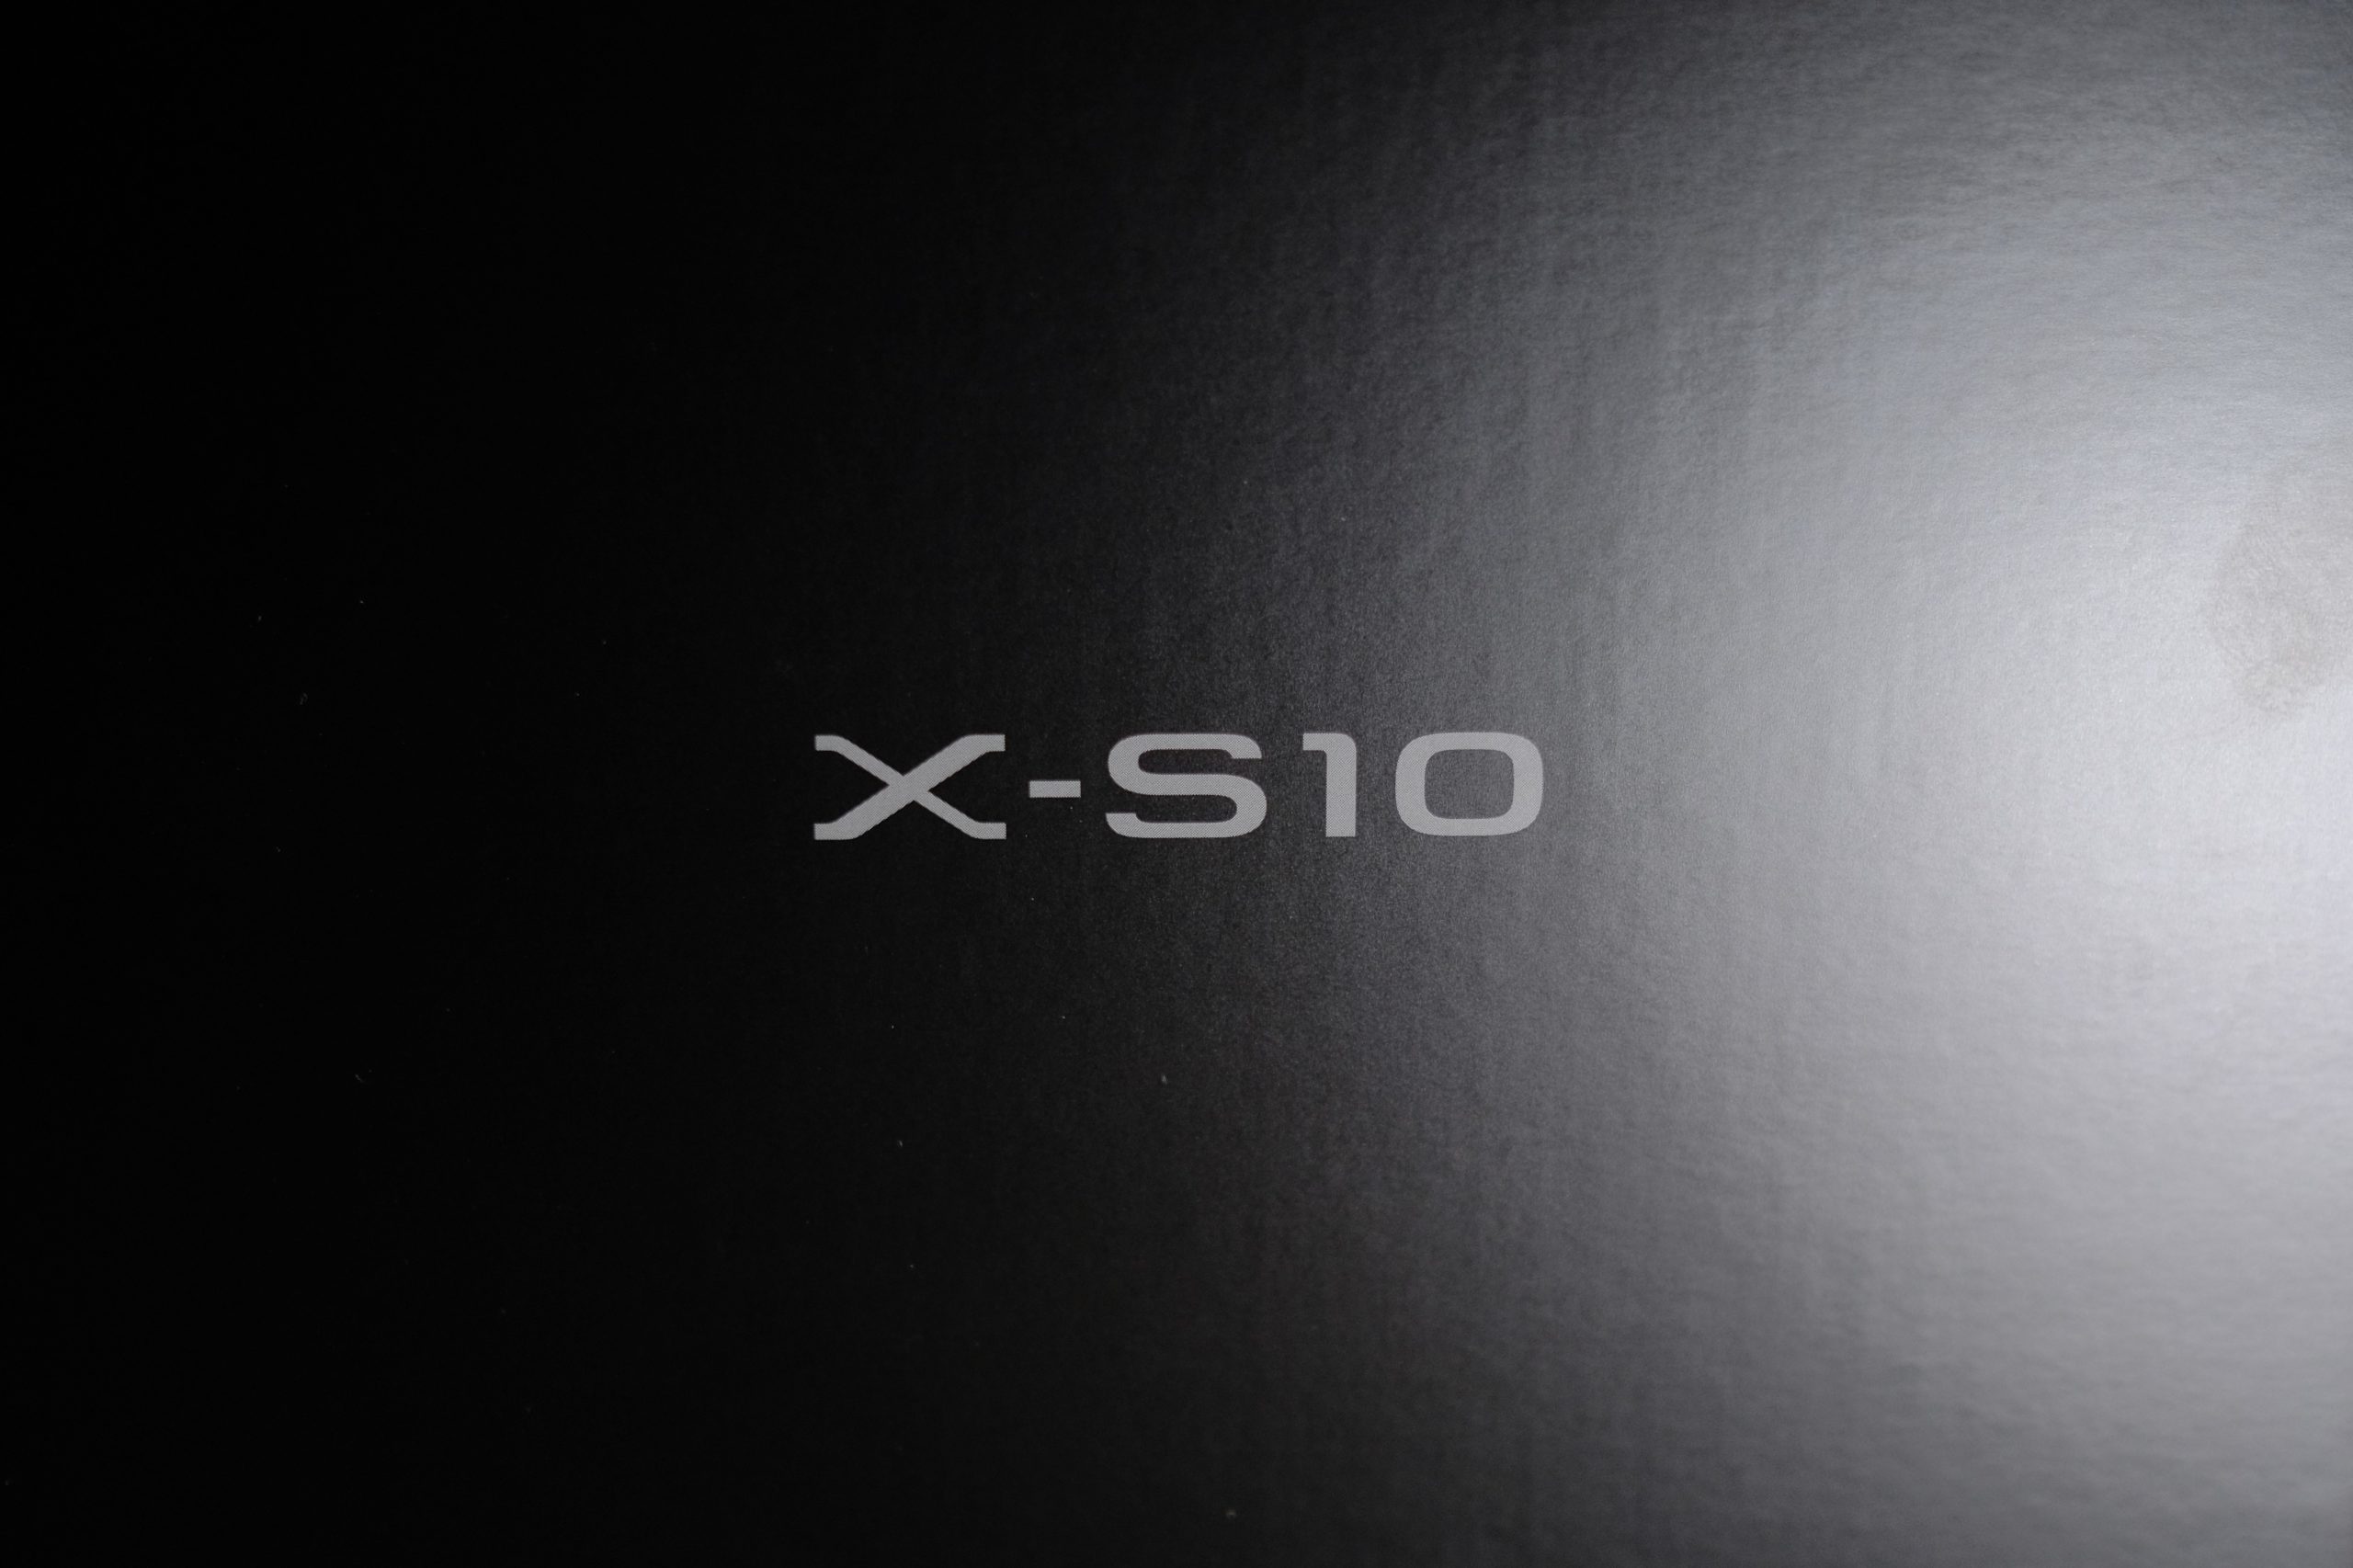 X-S10 なんだかんだで発売日にお買い上げ お買い得感満載